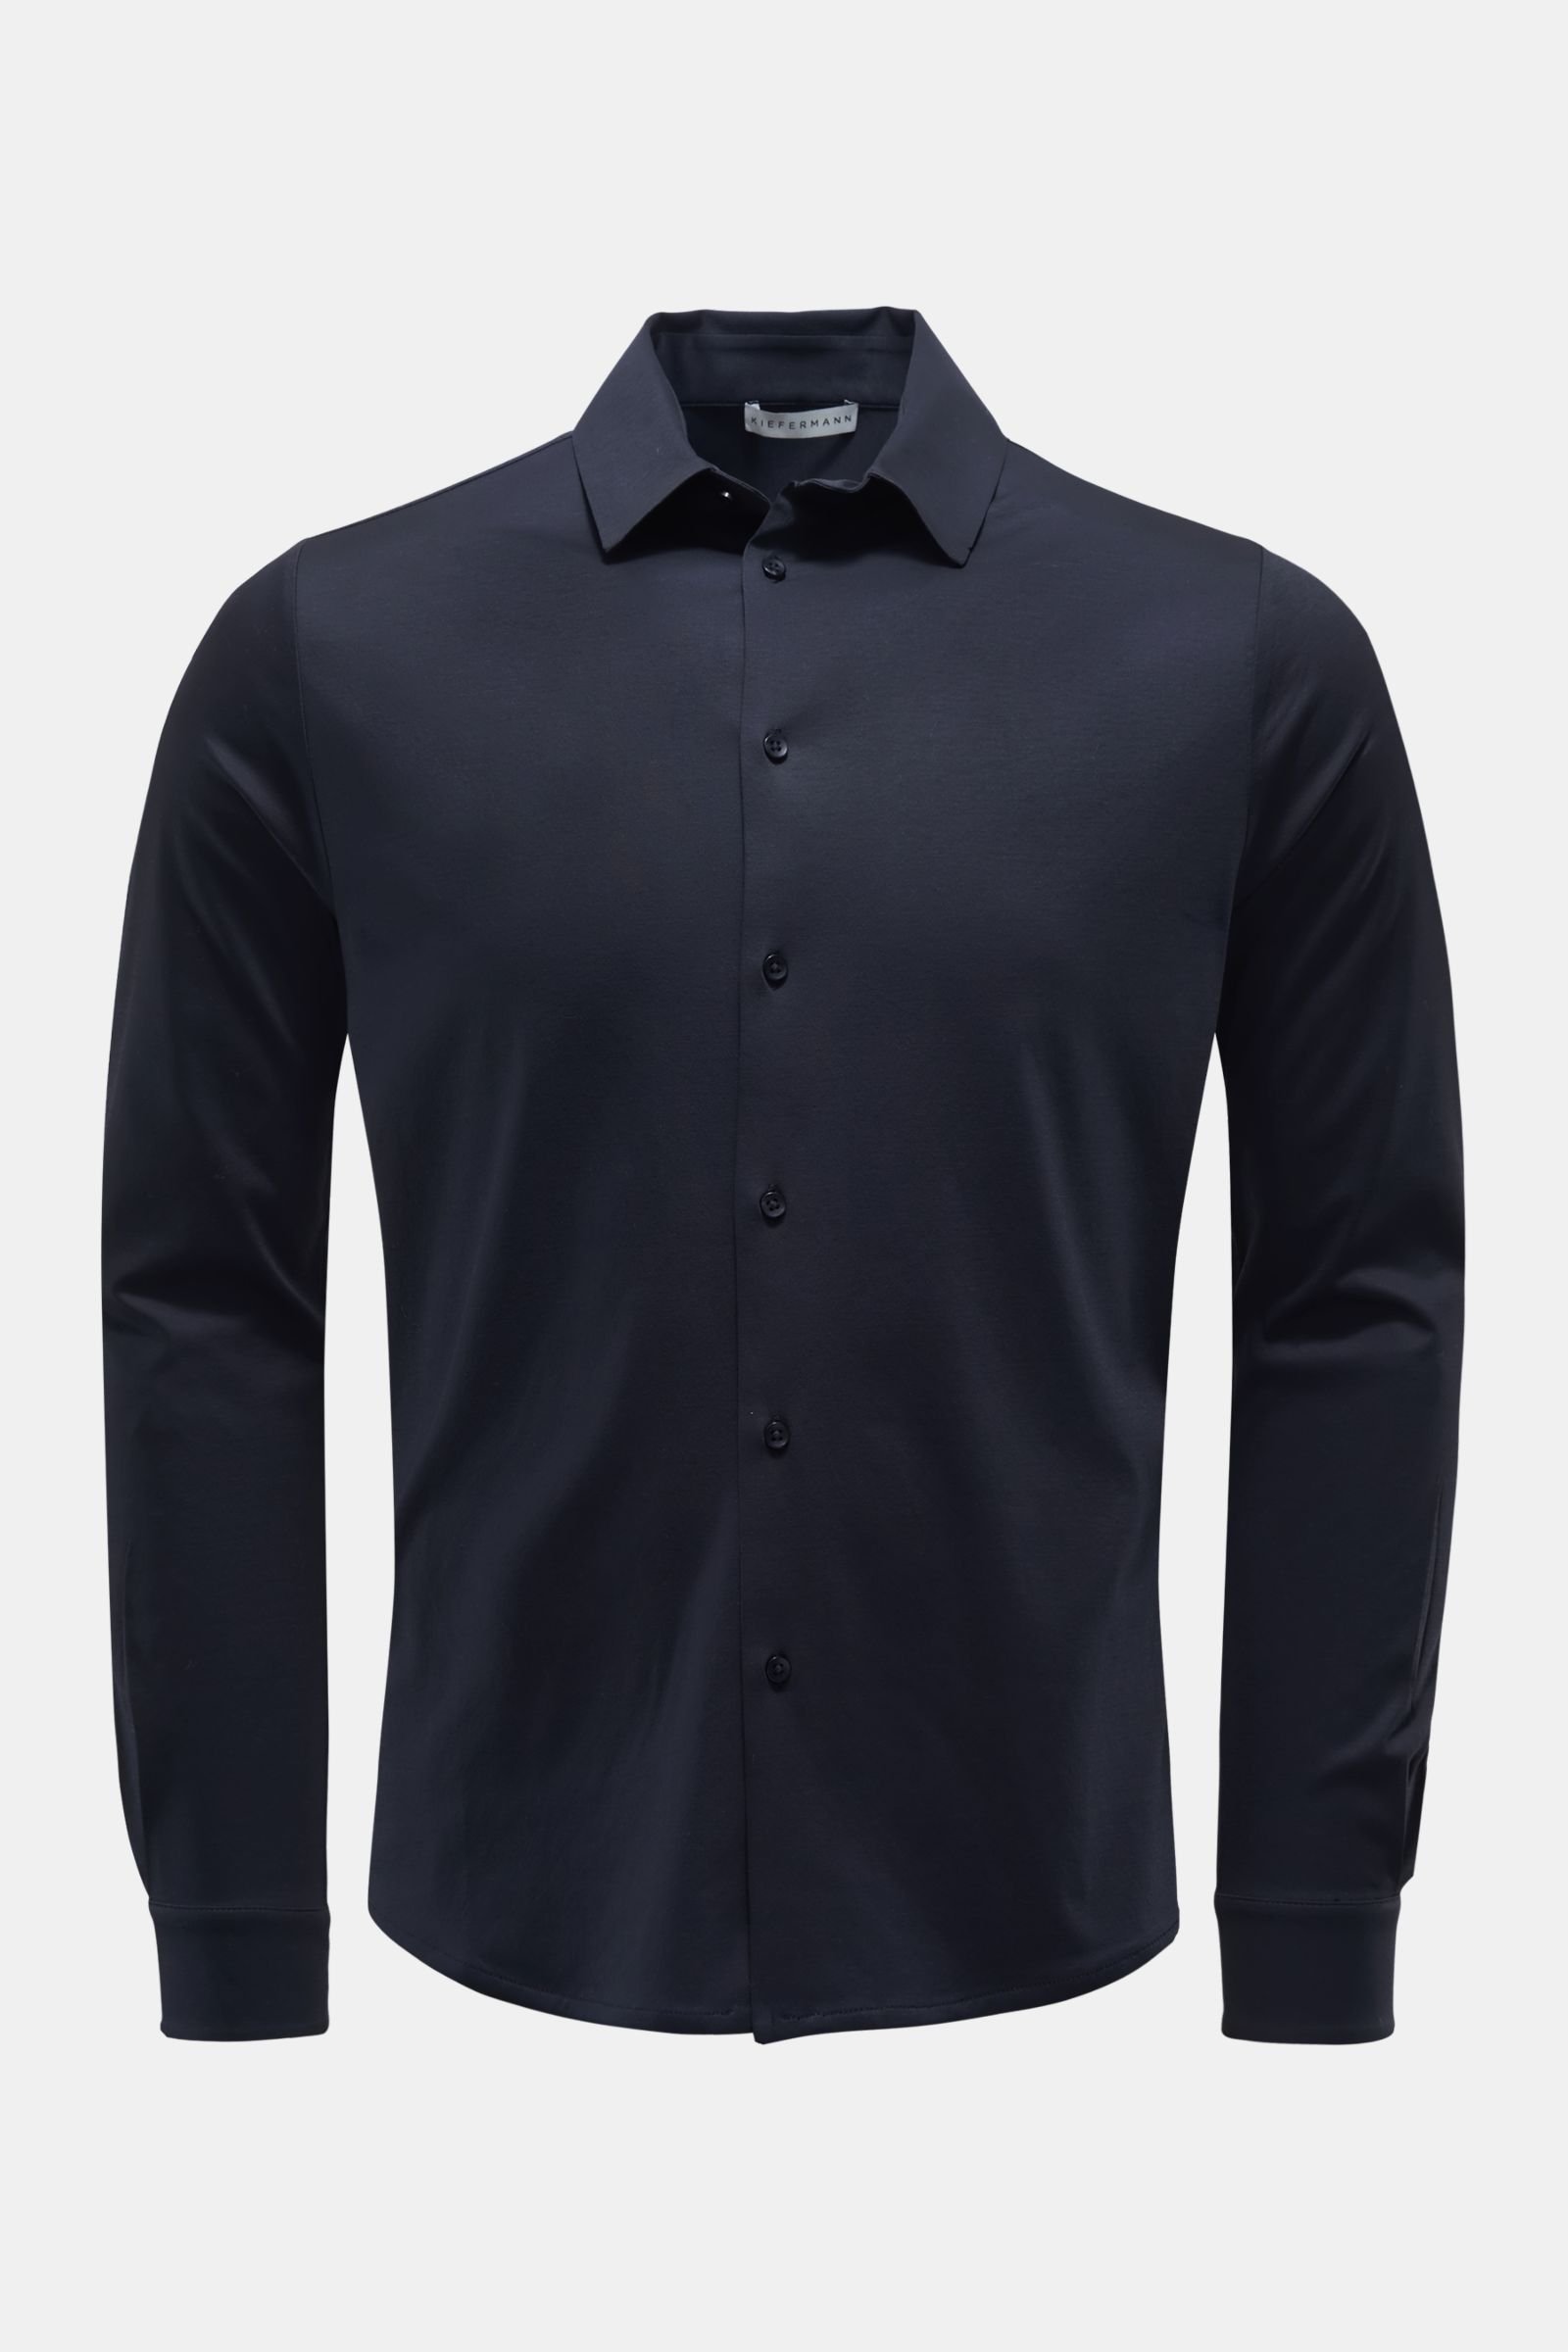 Jersey shirt 'Pius' narrow collar dark navy